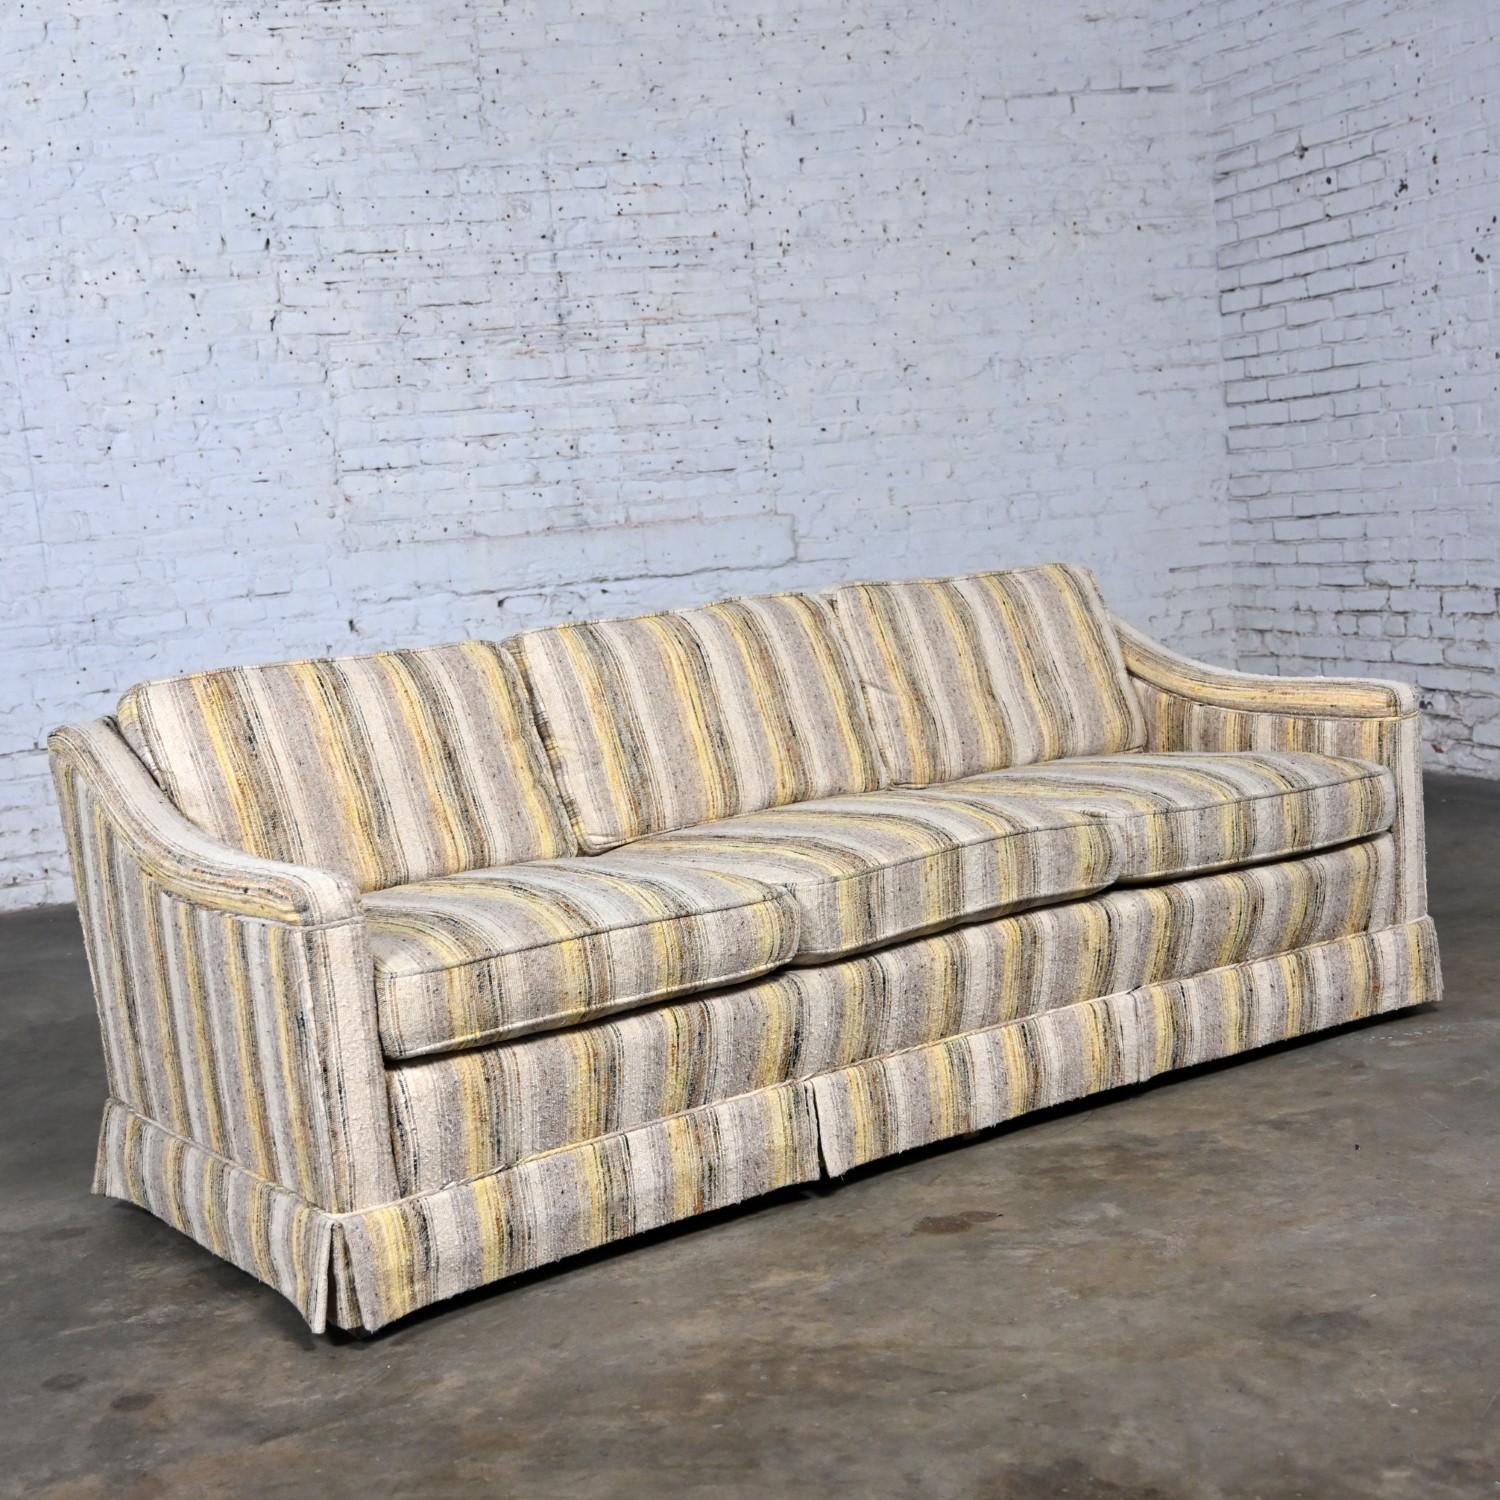 Maravilloso sofá de mediados del siglo XX de estilo moderno Henredon modificado Lawson, con tela original a rayas amarillas y beige, 3 cojines de asiento sueltos con muelles interiores de pluma envueltos en poliéster, 3 cojines de respaldo sueltos